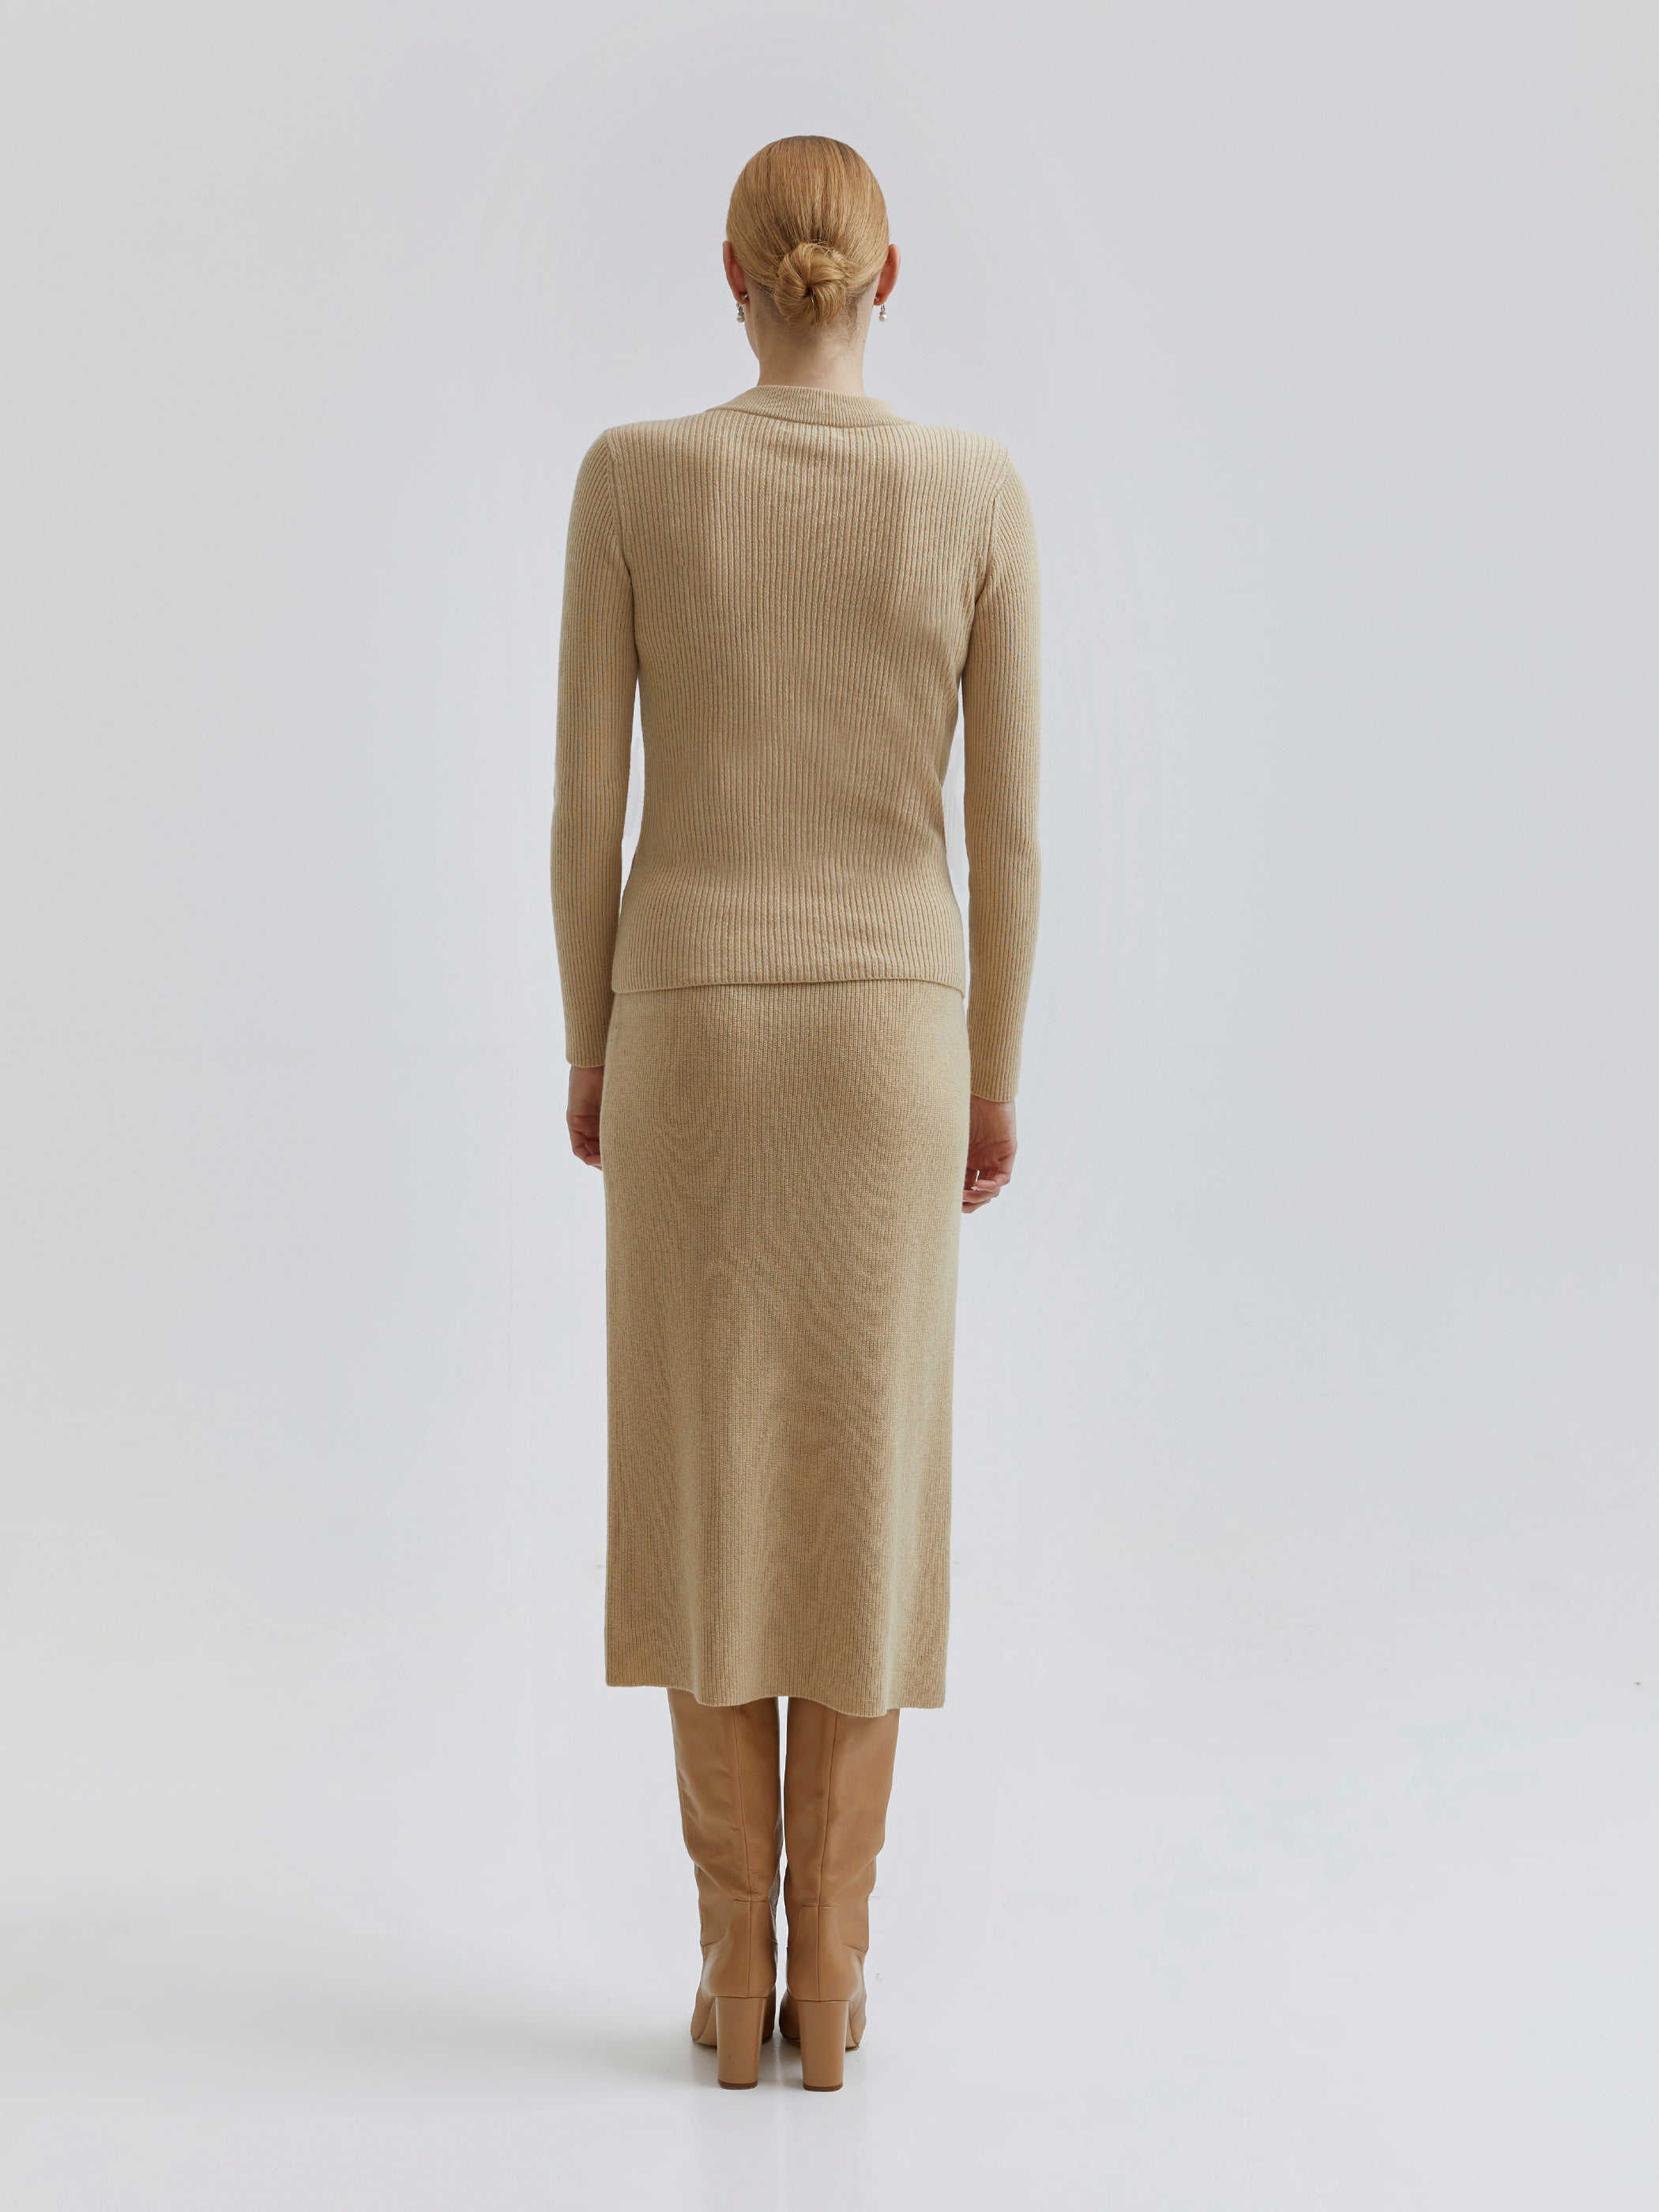 Edmee Merino-Cashmere Skirt